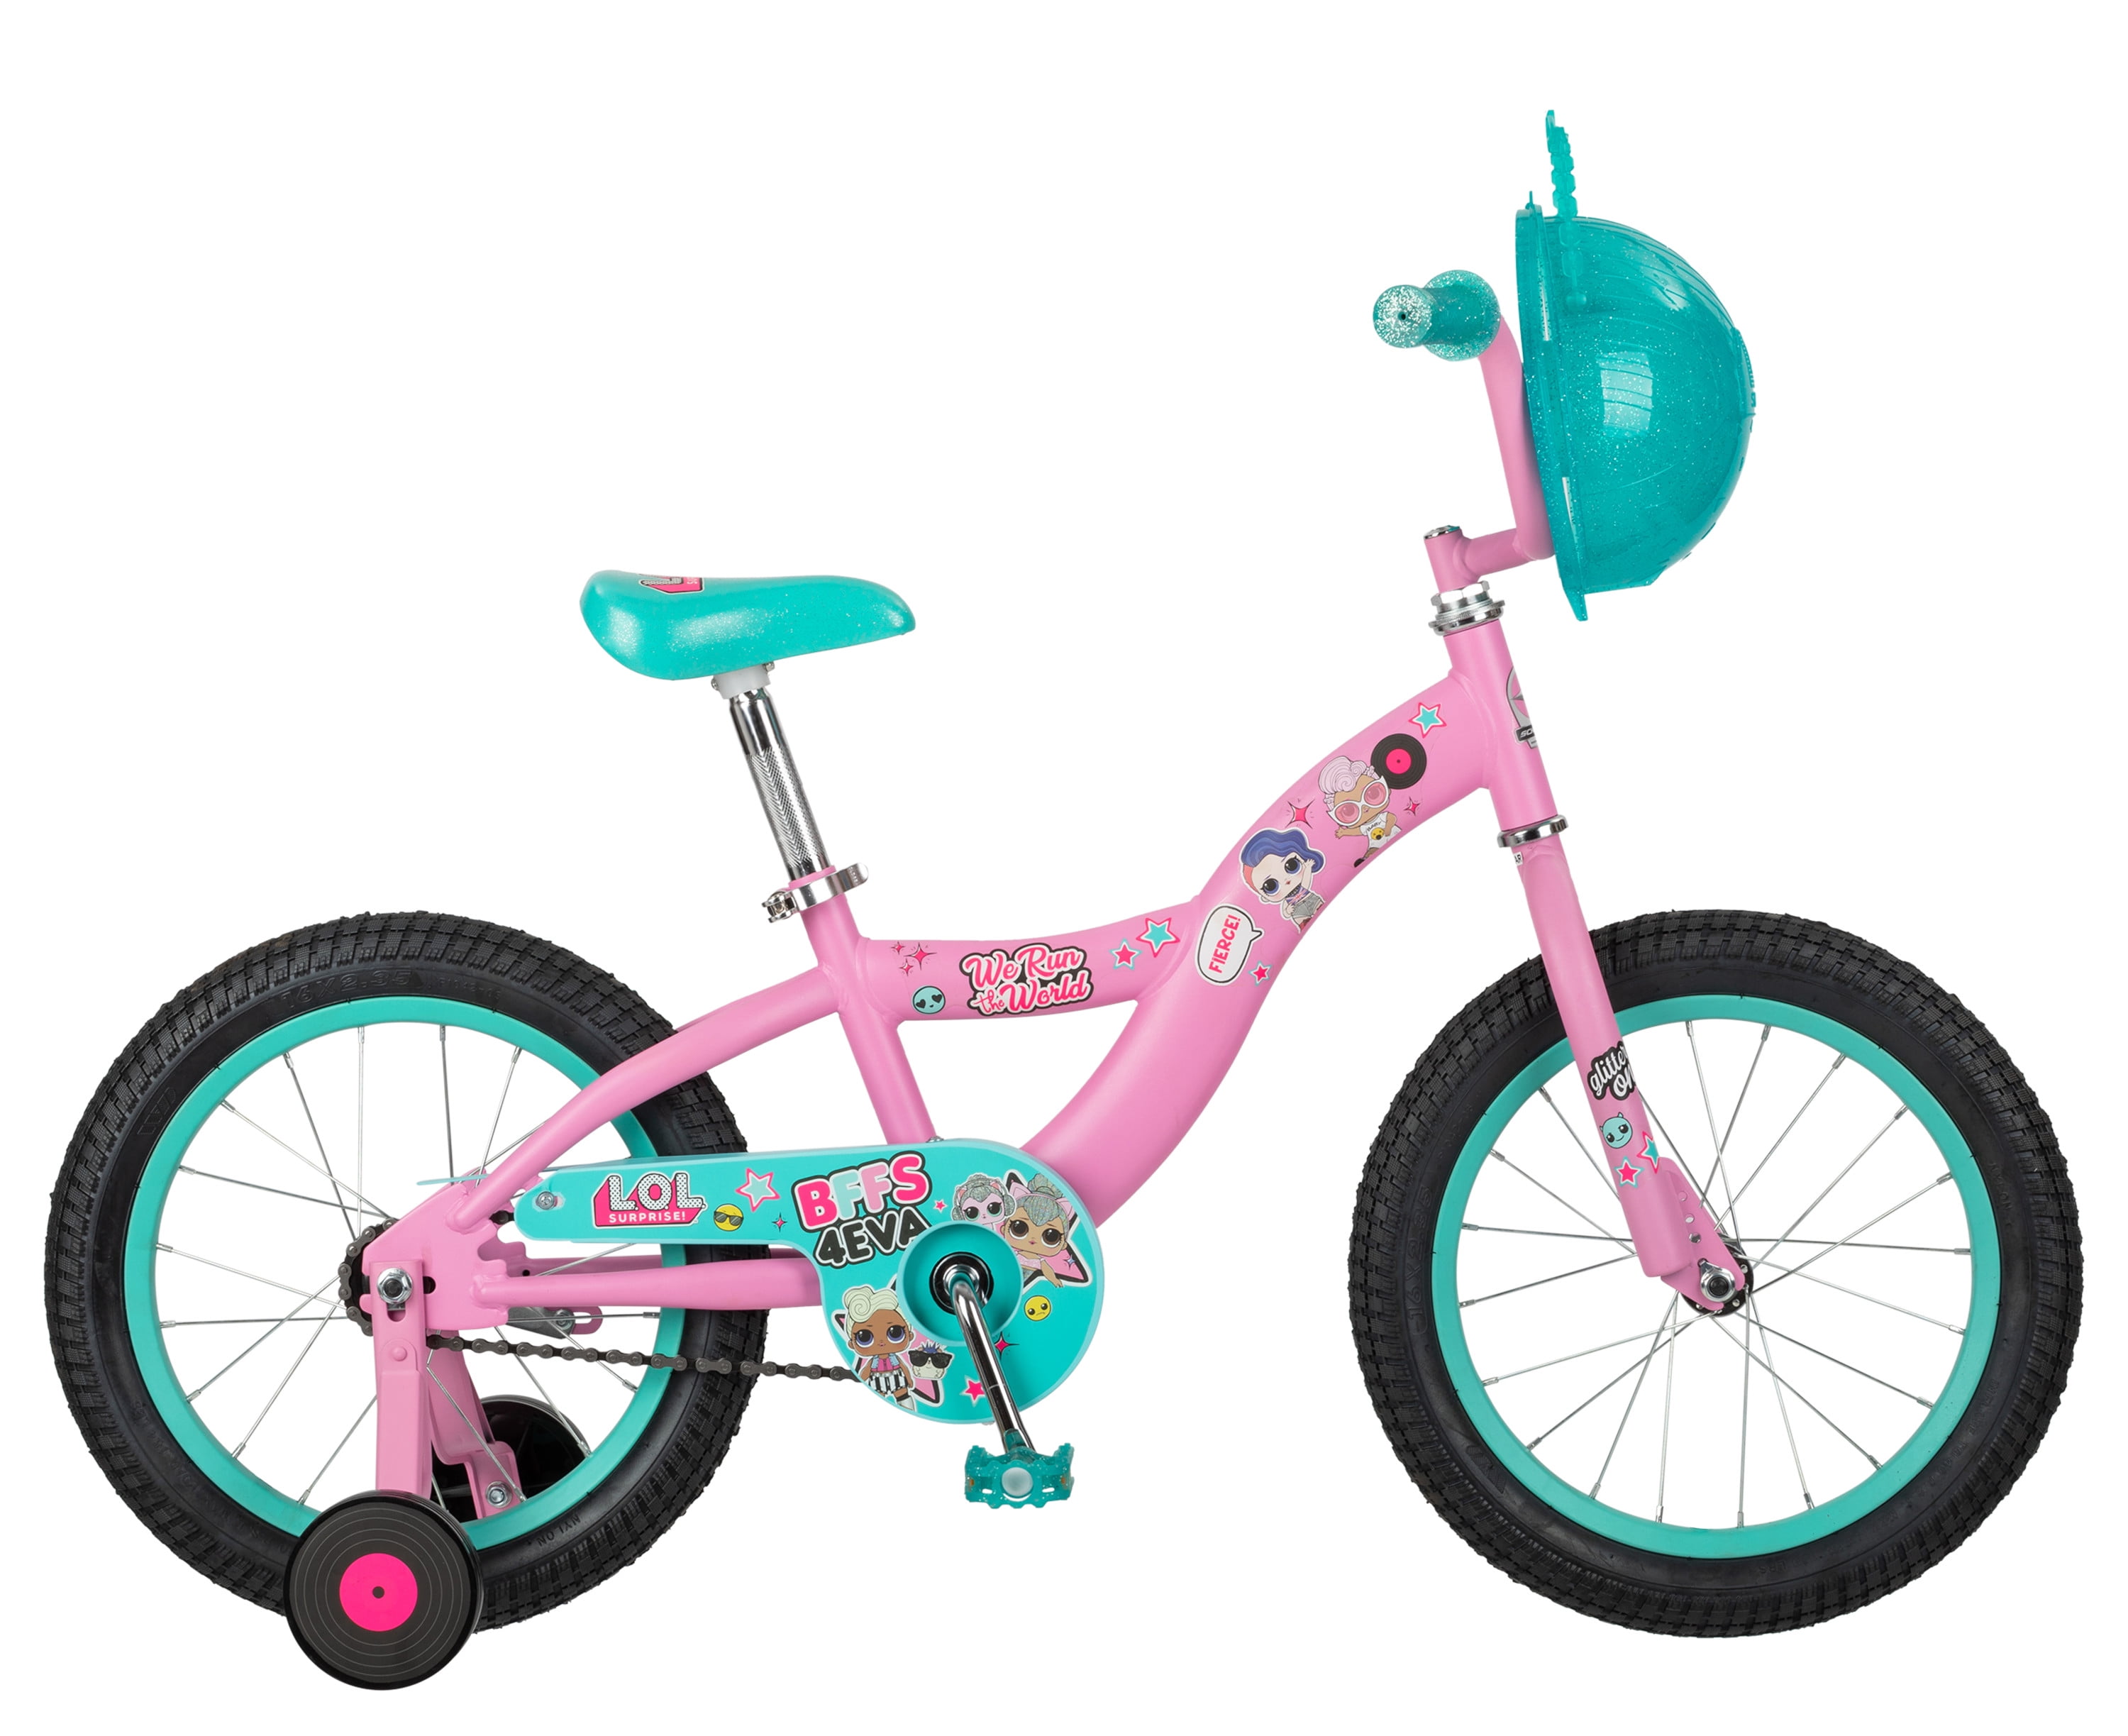 LOL Surprise kids bike, 16-inch wheel 